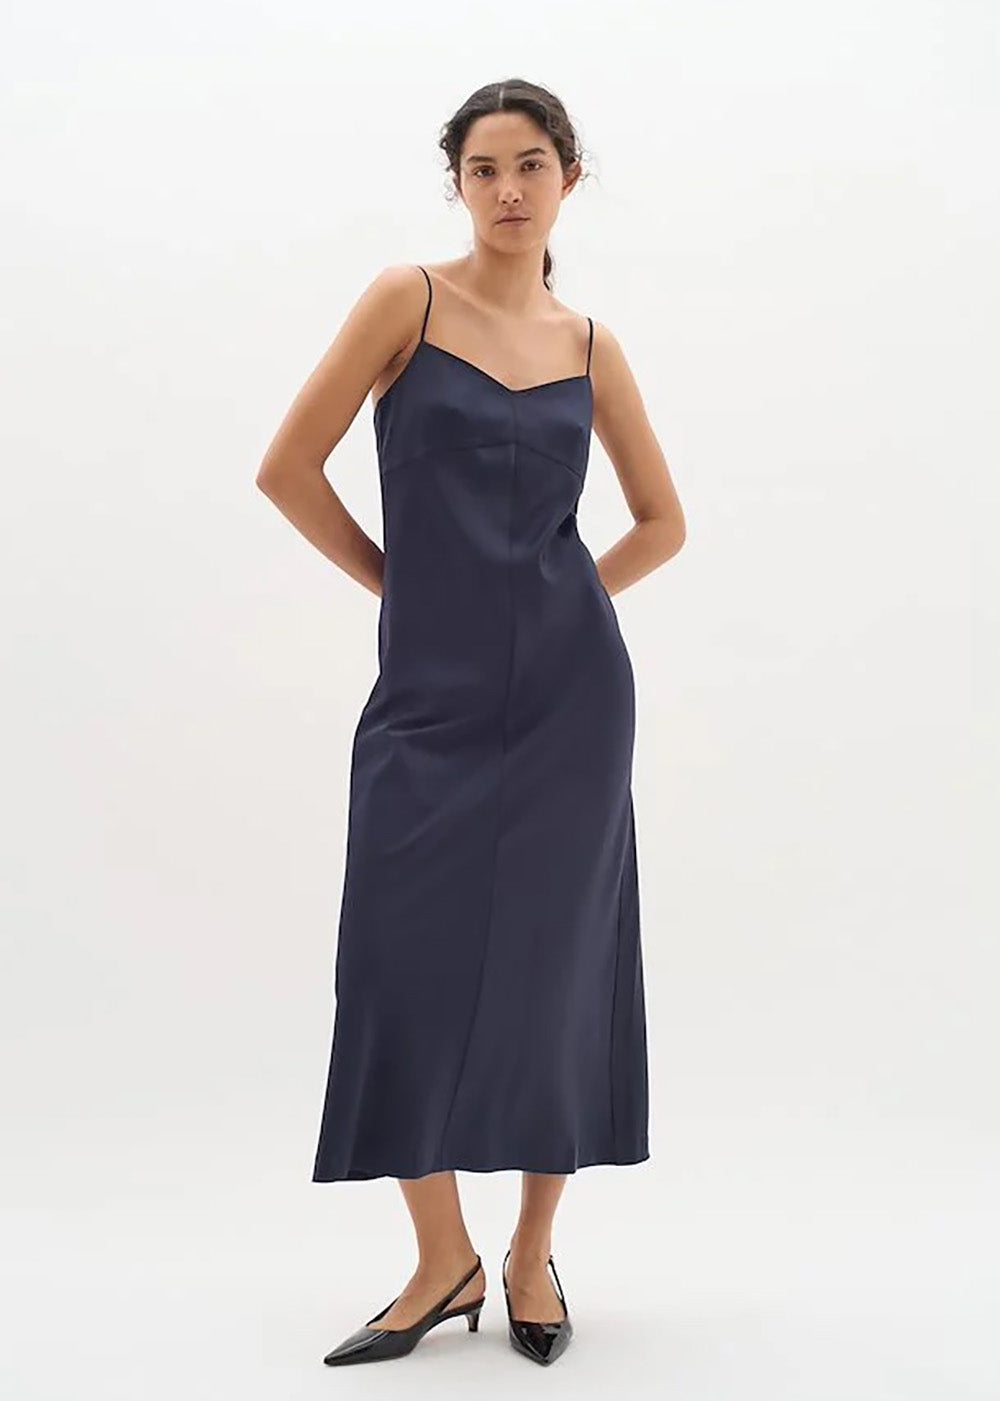 Xilky Strap Dress - Marine Blue - InWear Canada - Danali - 30109328